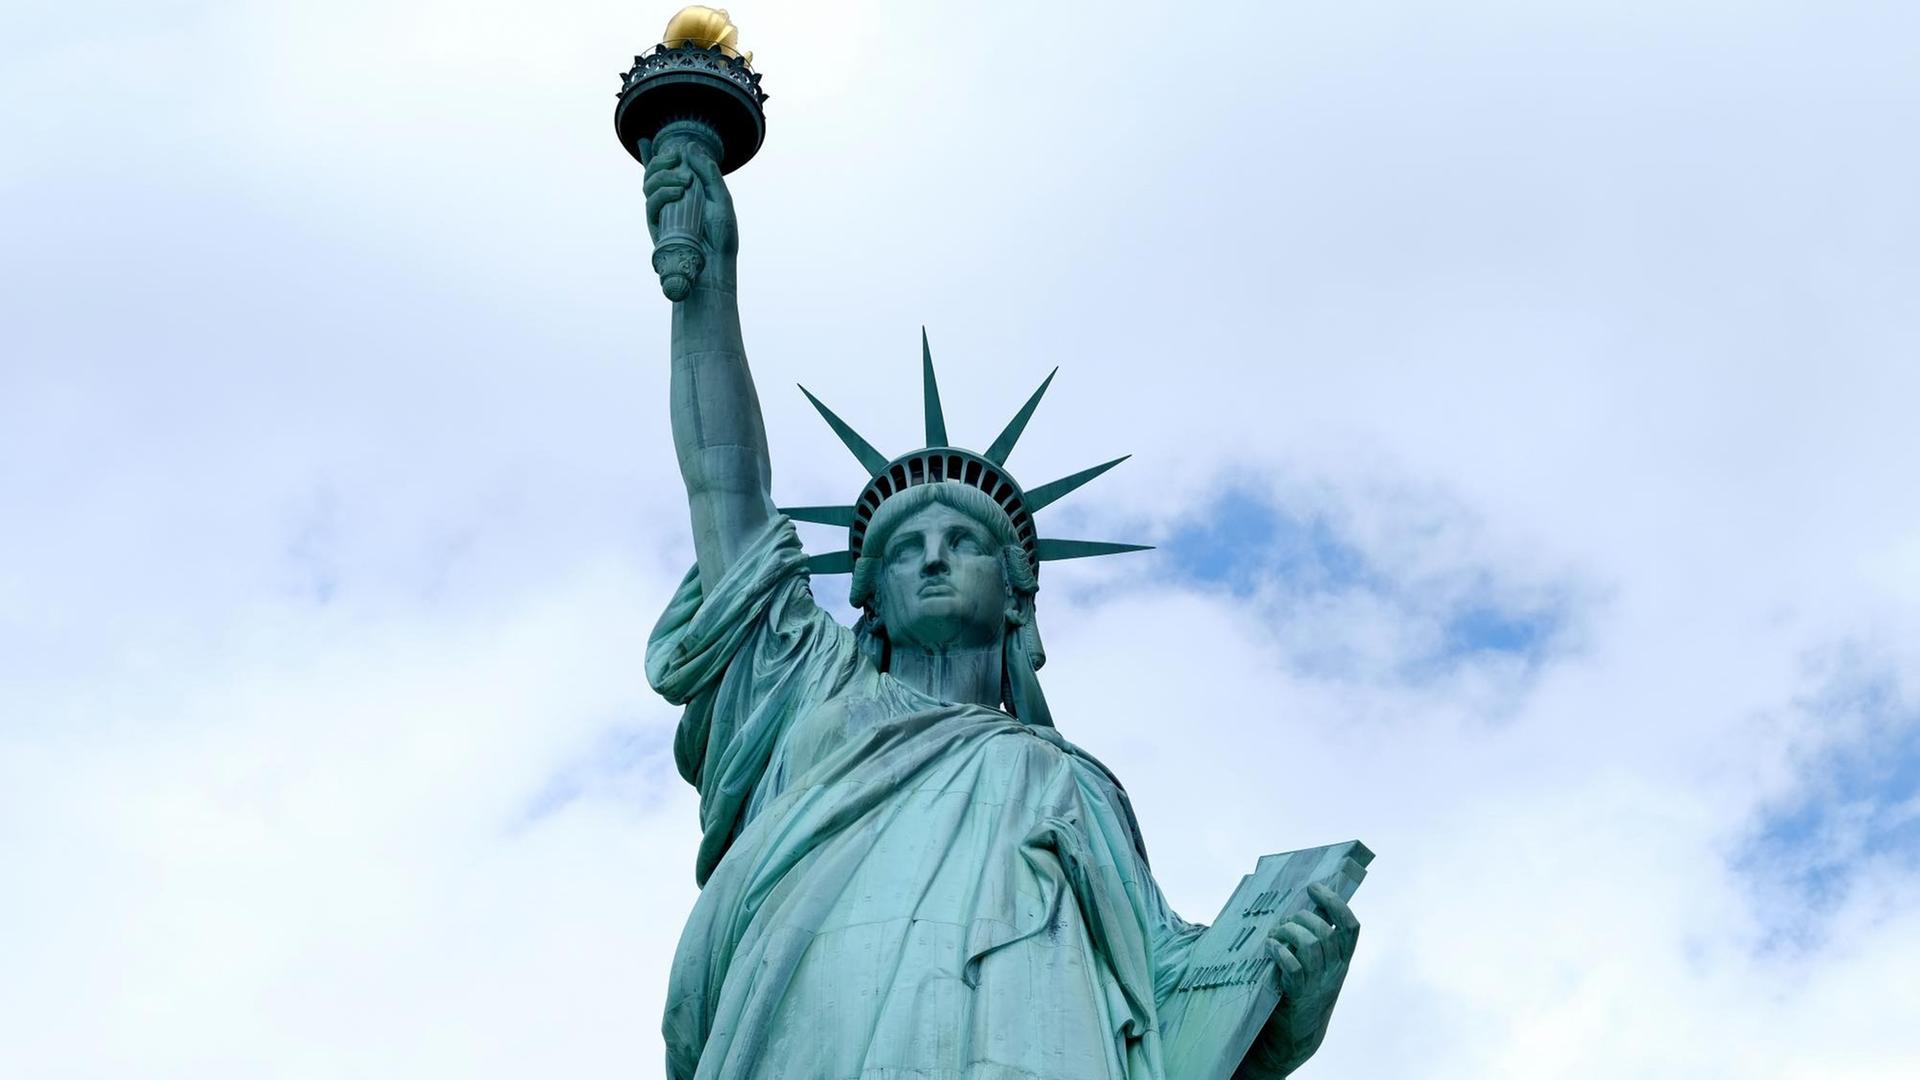 Ein Foto der Freiheitsstatue (Statue of Liberty) auf der Insel Liberty Island in New York City, USA.